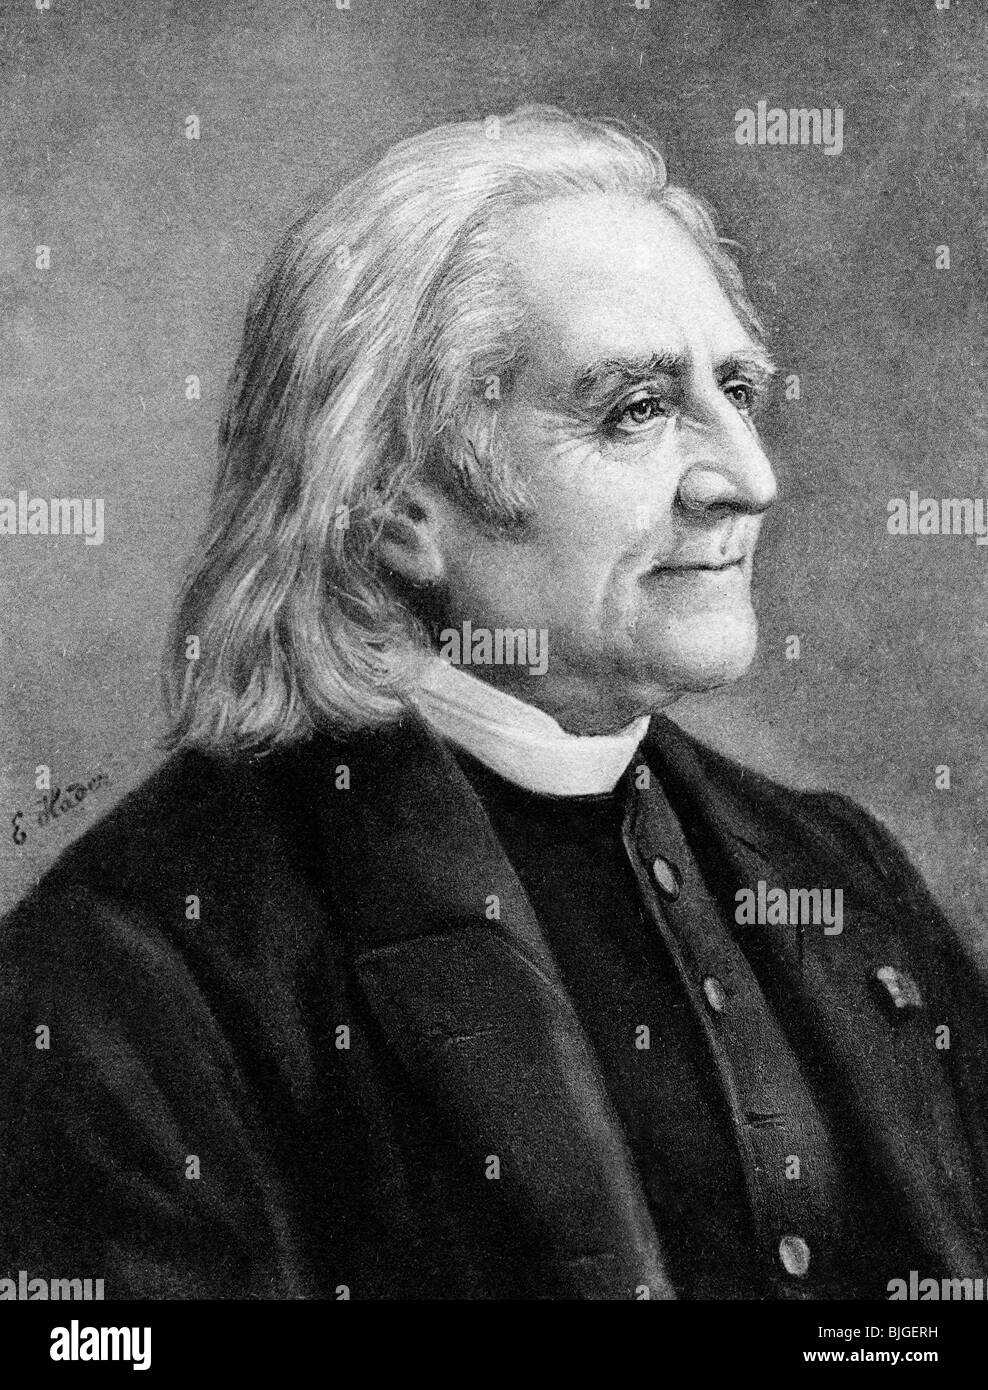 Liszt, Franz, 22.10.1811 - 31.7.1886, compositore e pianista ungherese, ritratto dopo disegno di E. hader, circa 1885, Foto Stock